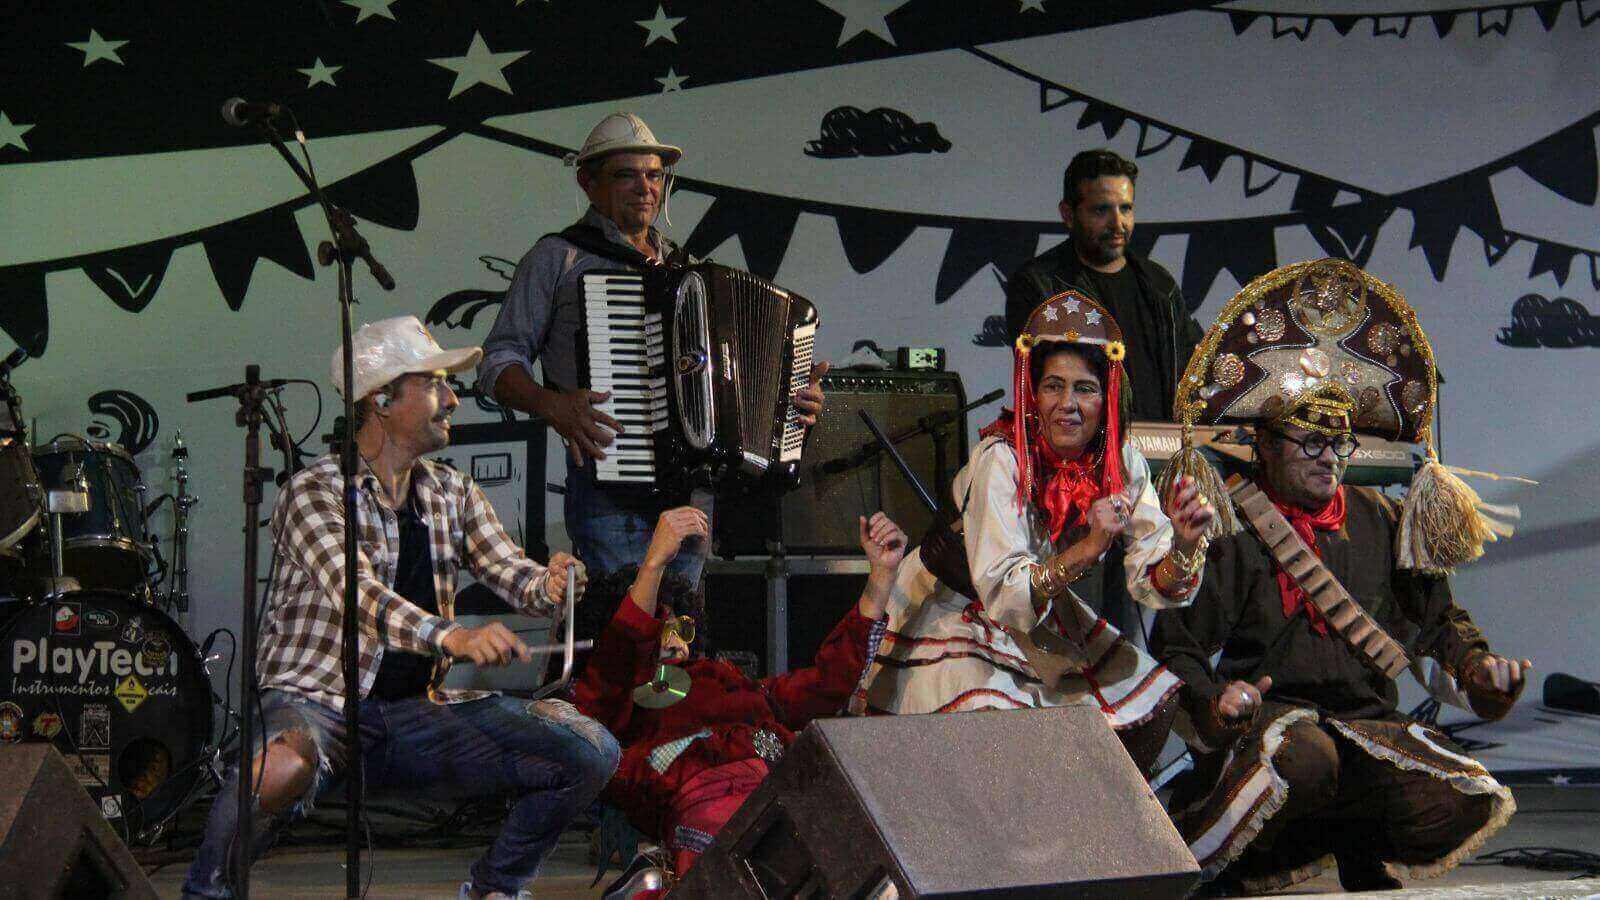 Apresentação cultural com música e dança em festa nordestina em Campo Limpo Paulista